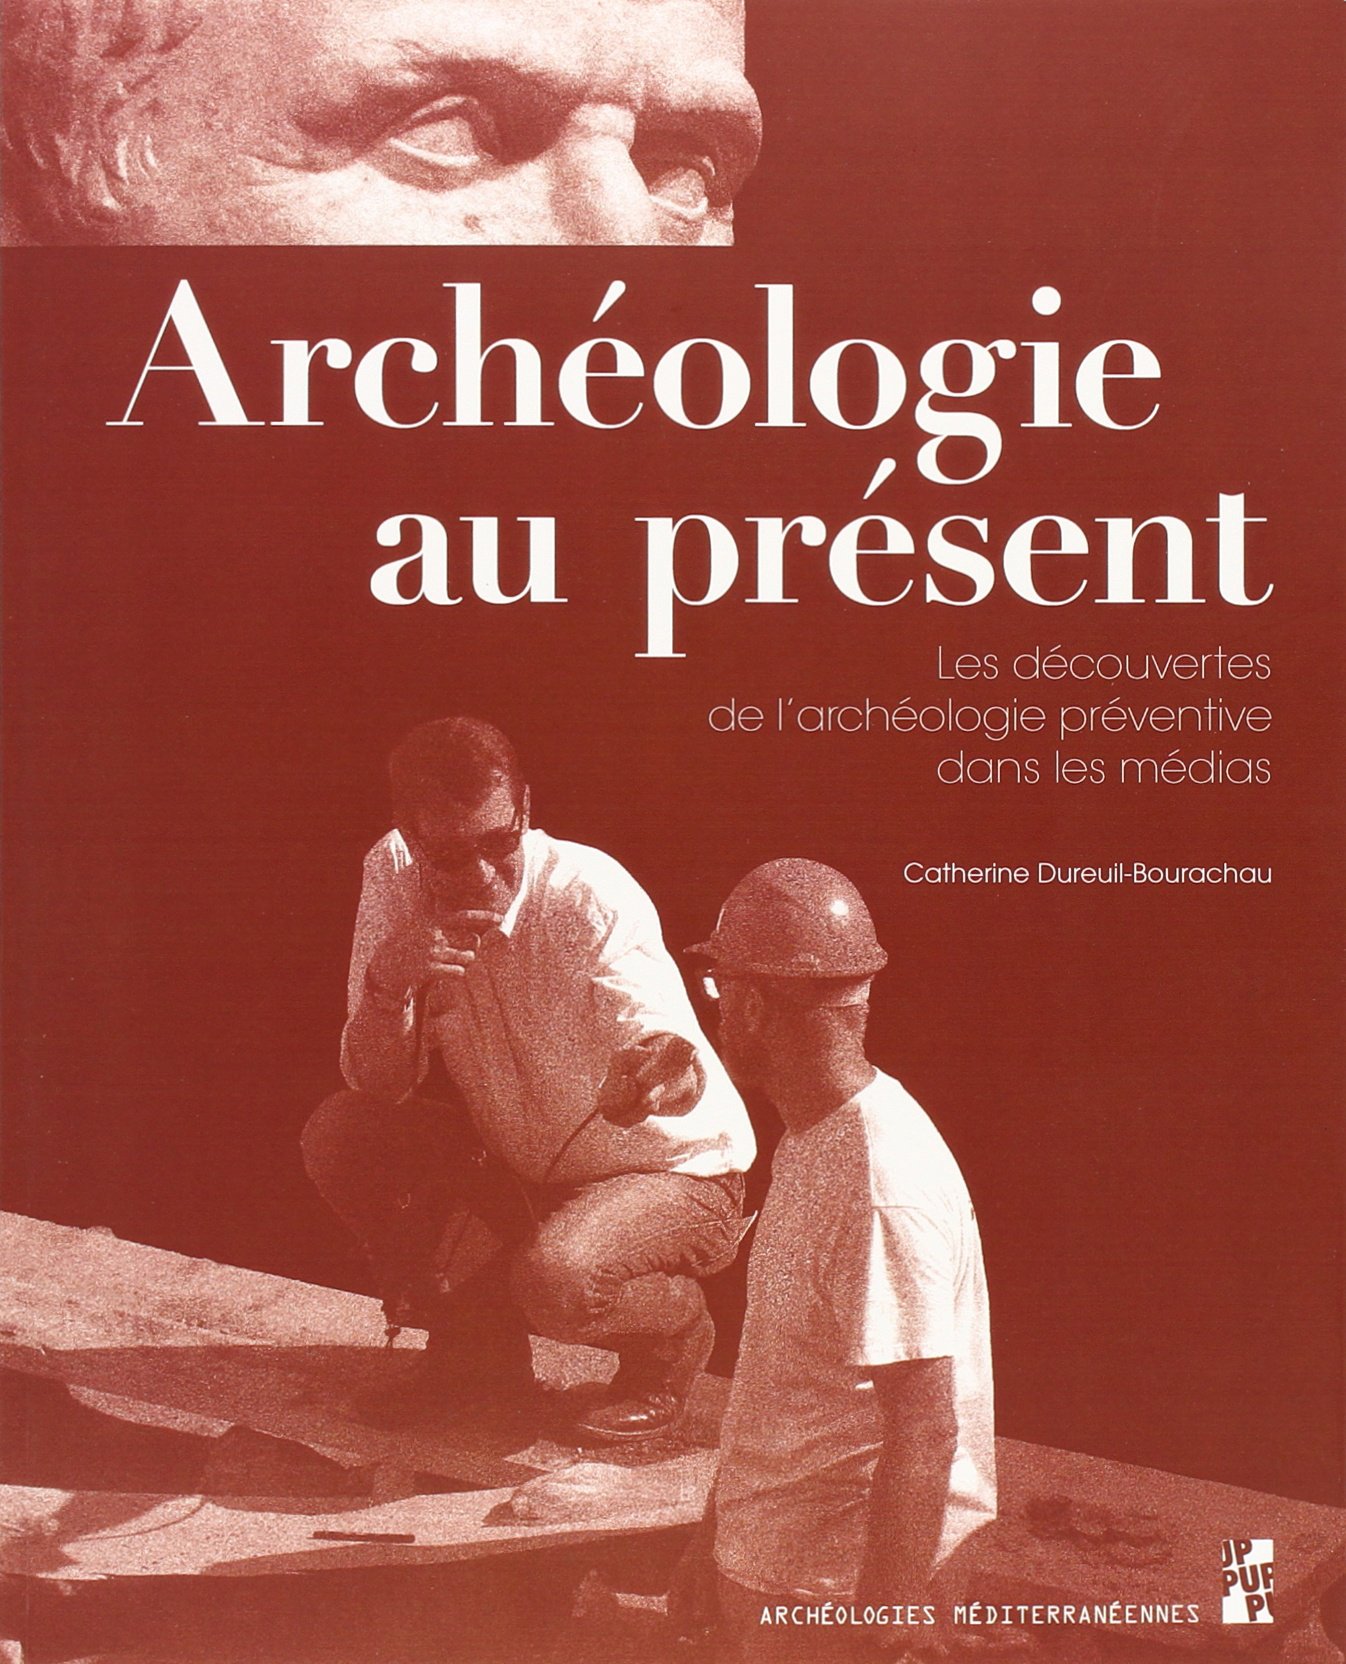 Archéologie au présent. Les découvertes de l'archéologie préventive dans les médias, 2015, 104 p.